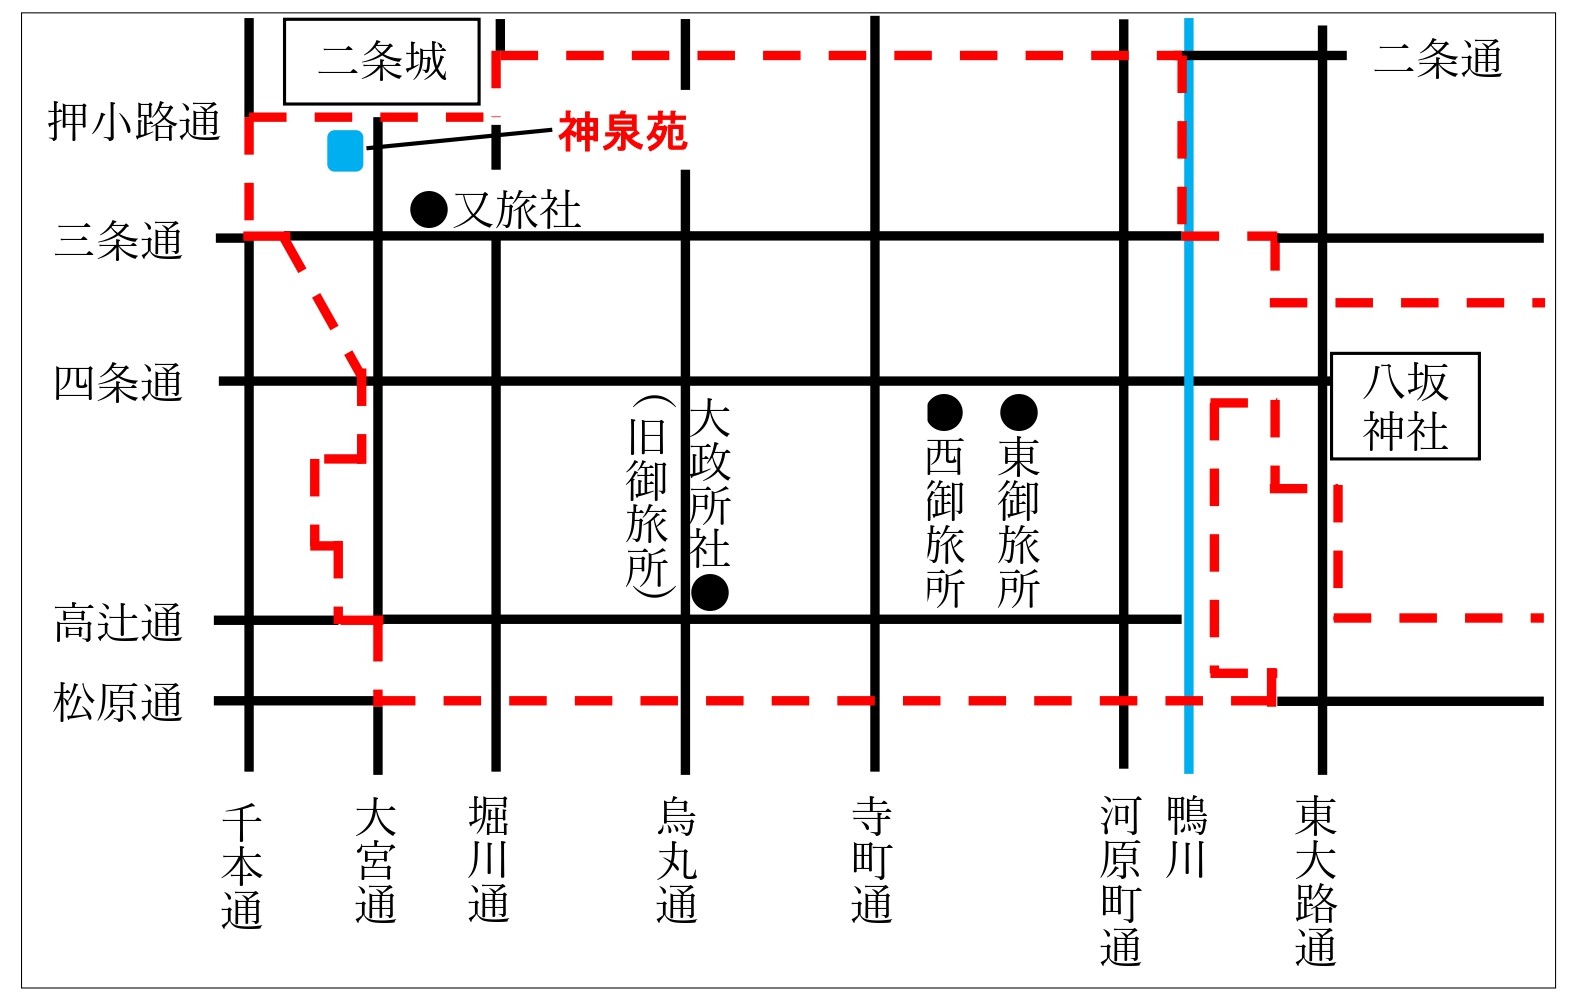 八坂神社・神泉苑位置関係図(赤い線は八坂神社氏子区域の目安を表します)